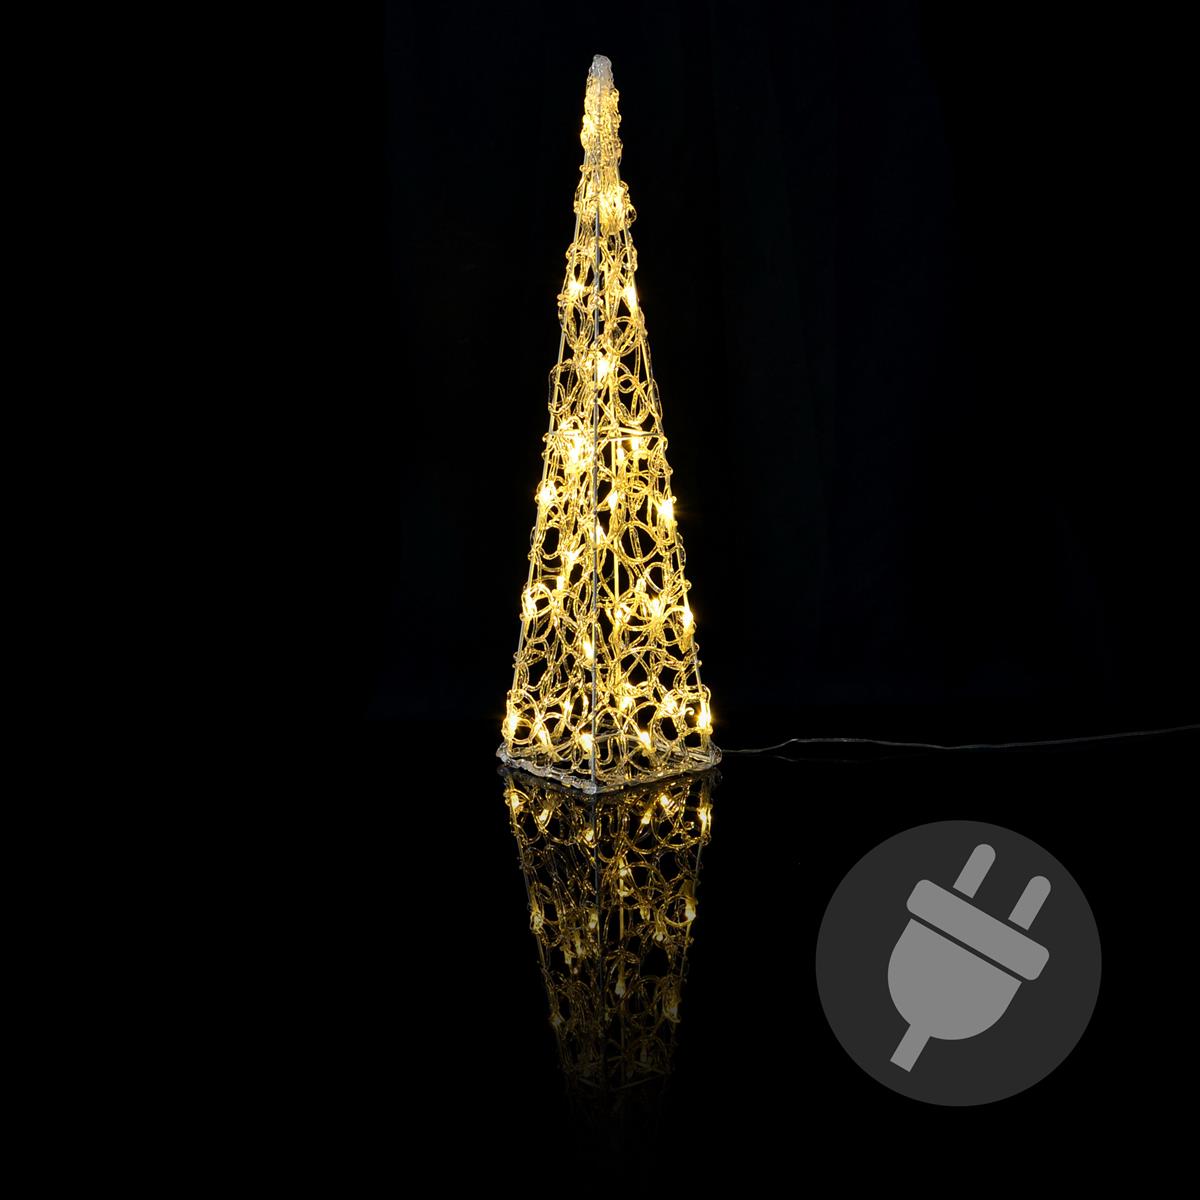 Lichterkegel Acryl 30er LED beleuchtete Pyramide Lichtpyramide warmweiß Trafo Timer